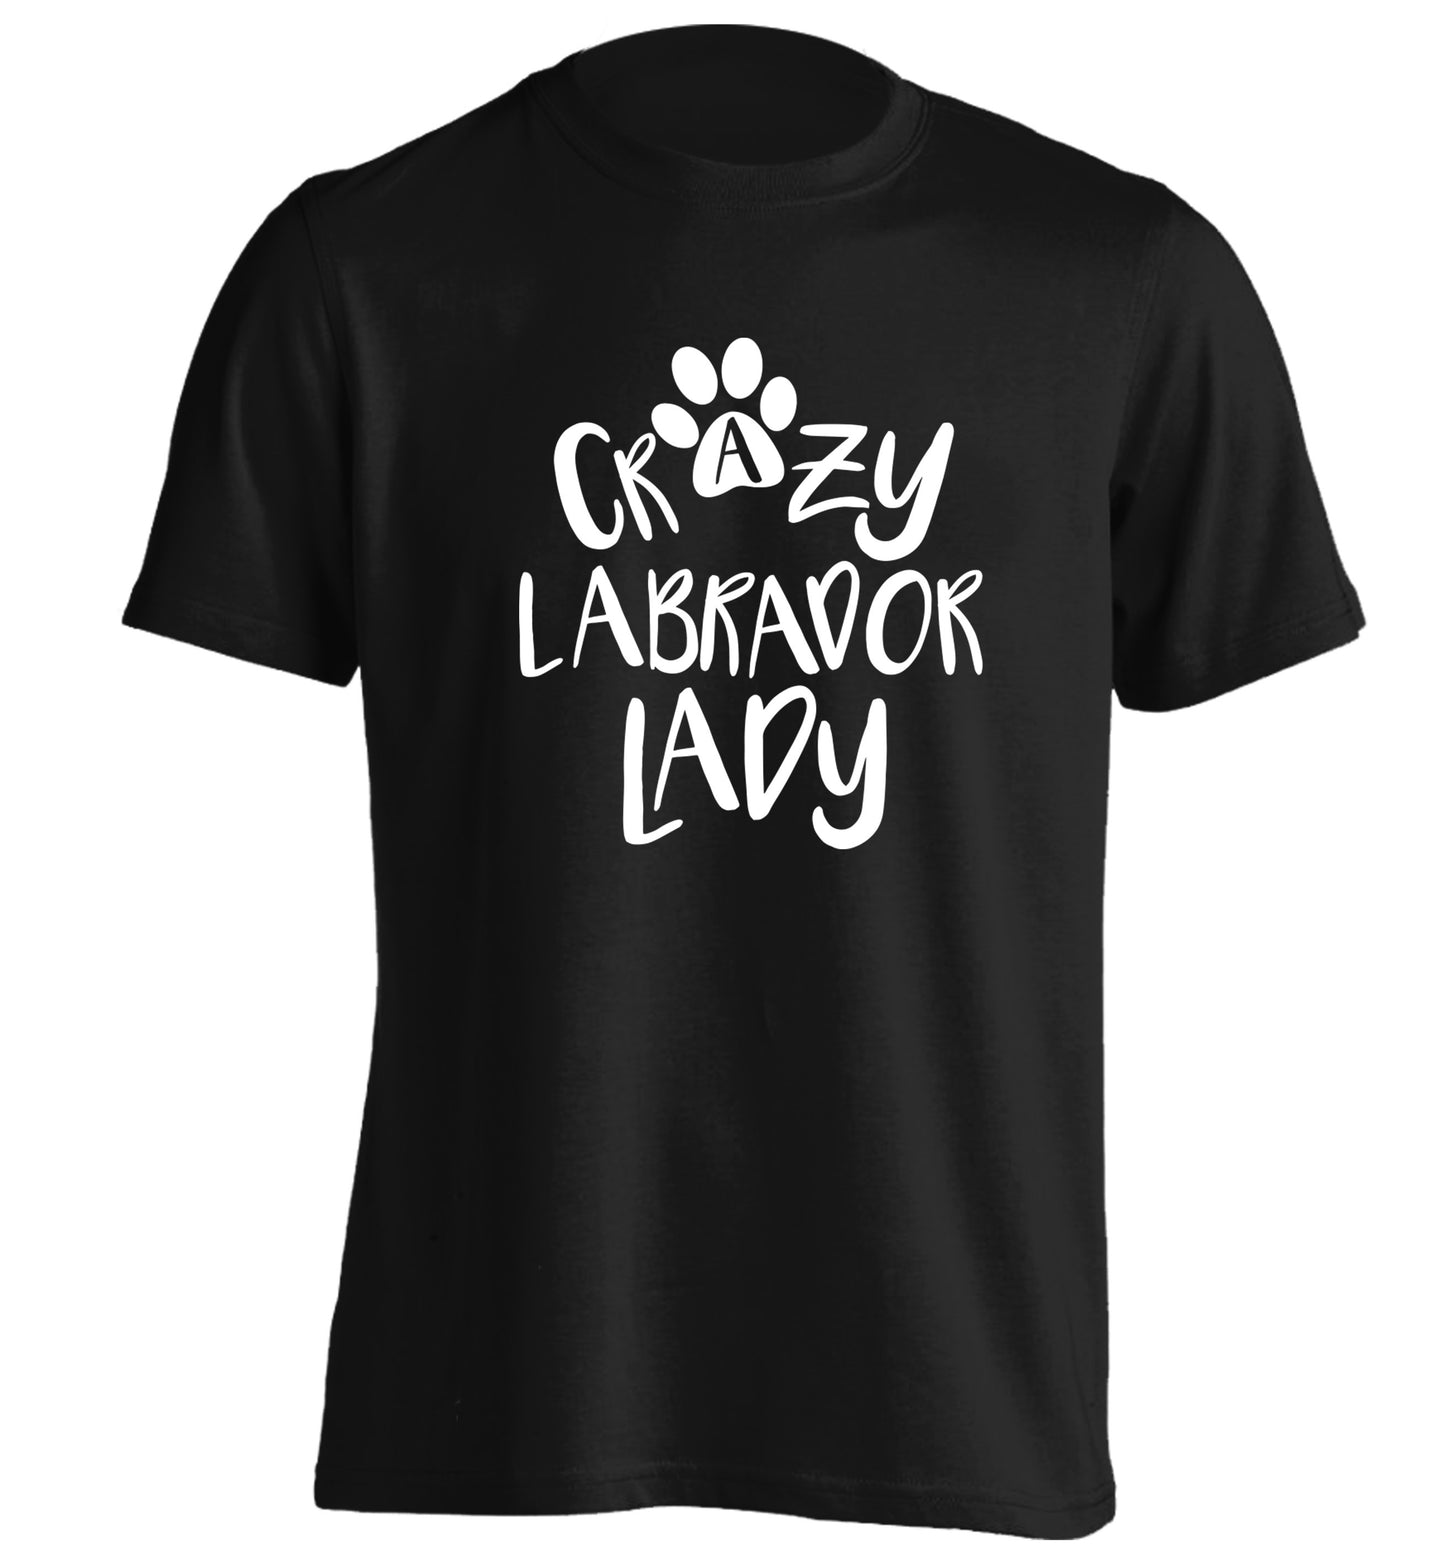 Crazy labrador lady adults unisex black Tshirt 2XL